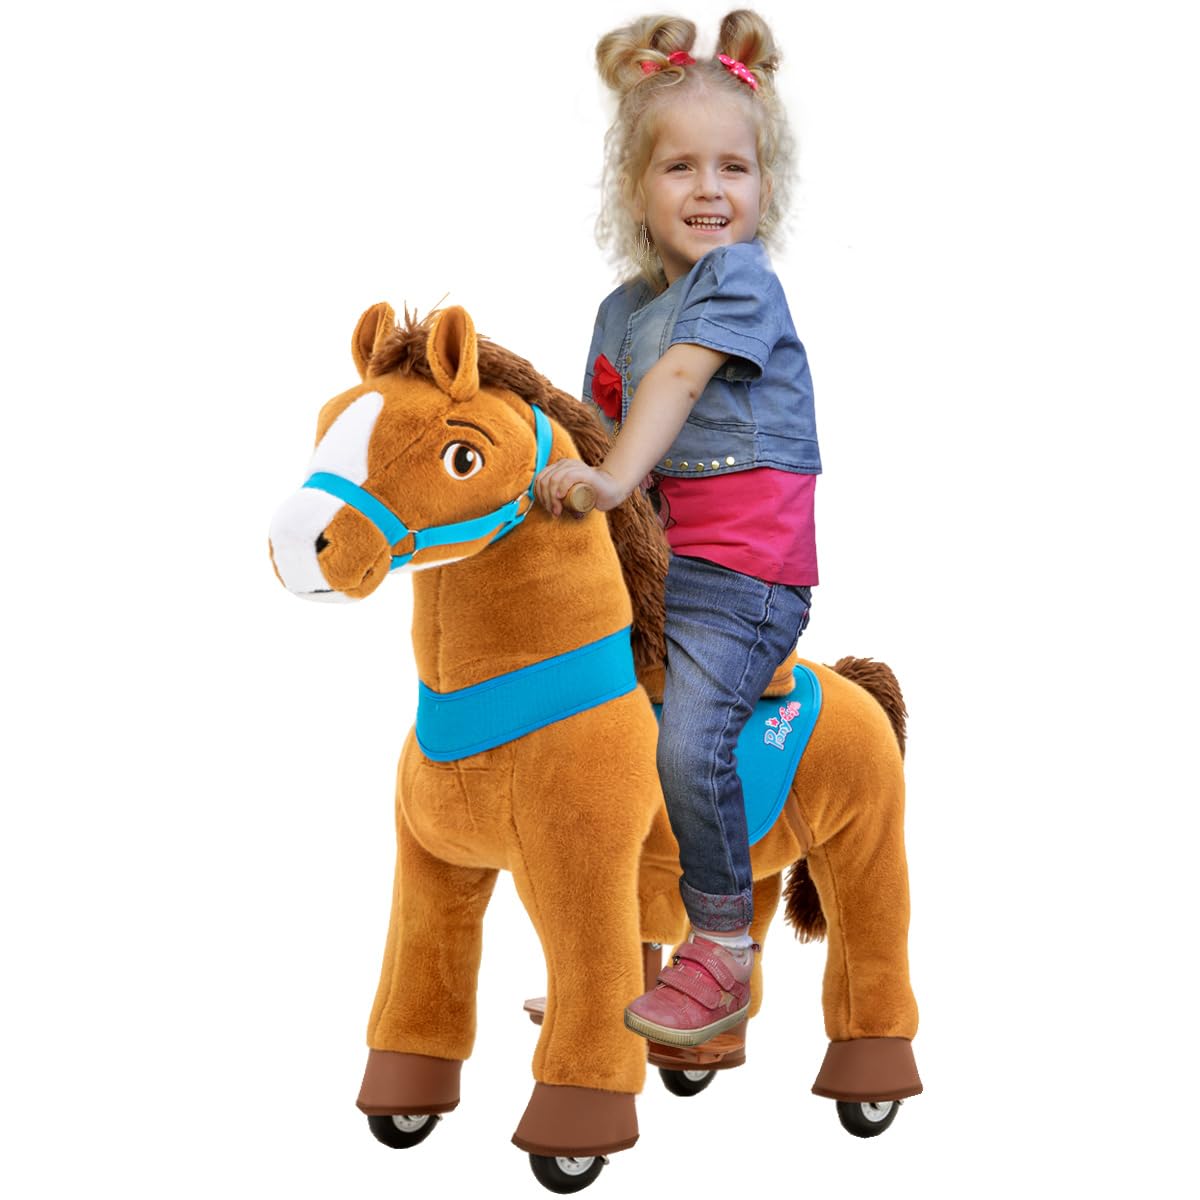 PonyCycle Amadeus | 𝟯 𝐉𝐀𝐇𝐑𝐄 𝐆𝐀𝐑𝐀𝐍𝐓𝐈𝐄 - E-Serie Pferd - Schaukelpferd mit Handbremse - Kuscheltier - Spielpferd zum Reiten - Kinder Pony auf Rollen - Plüschtier - Reitpferd - 3-5 Jahre